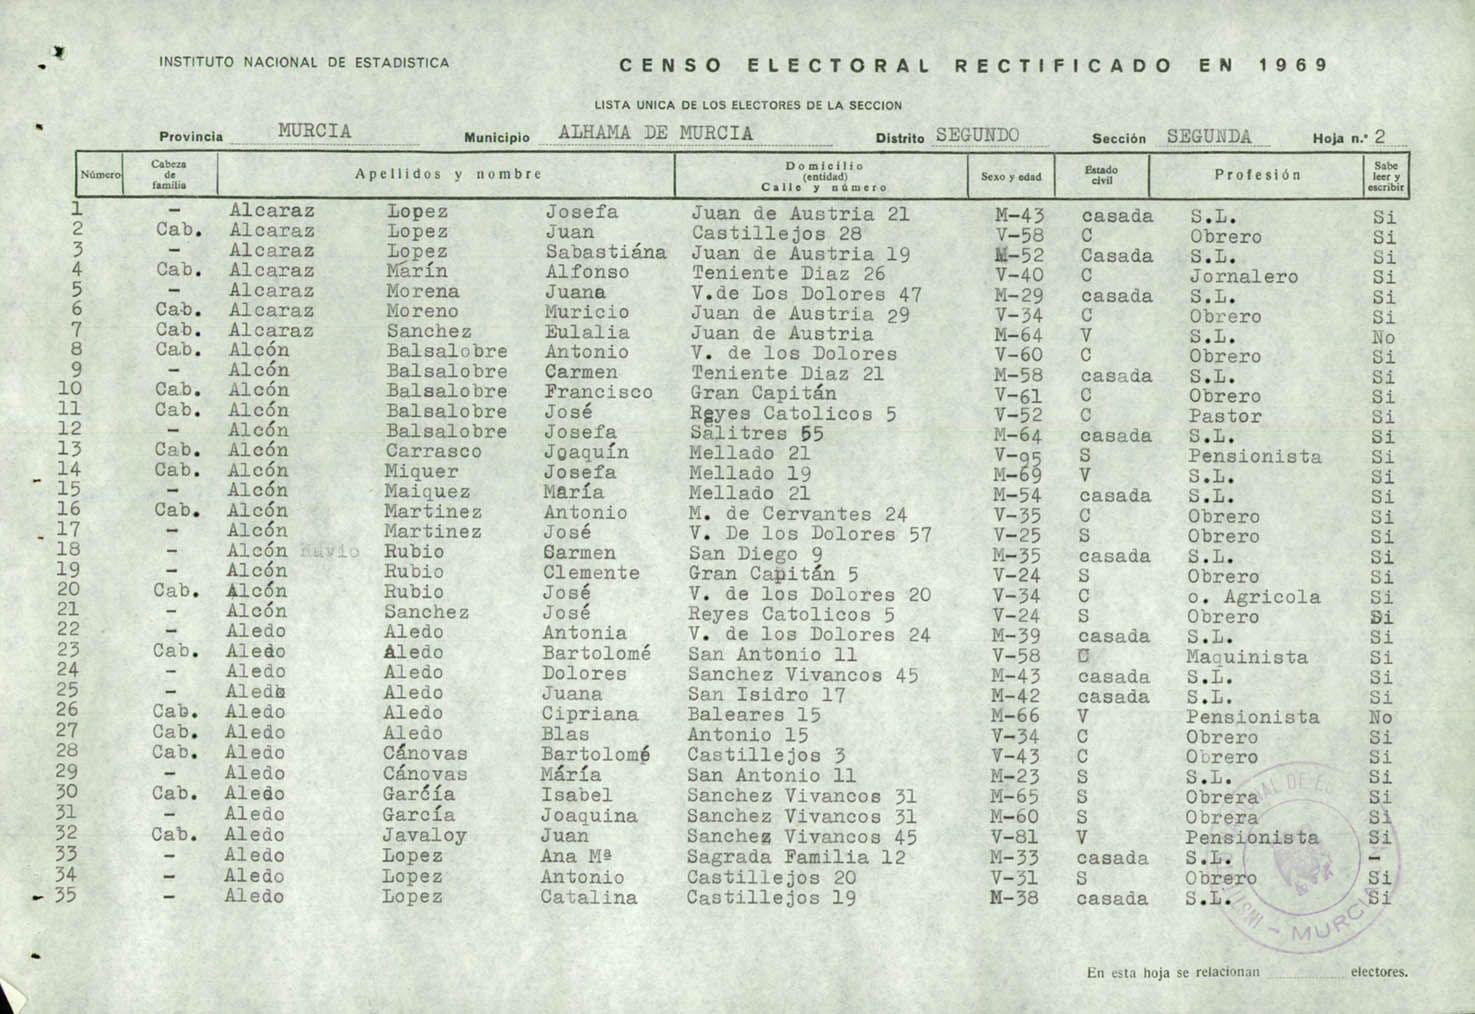 Censo electoral rectificado en 1969: De Aledo a Bullas